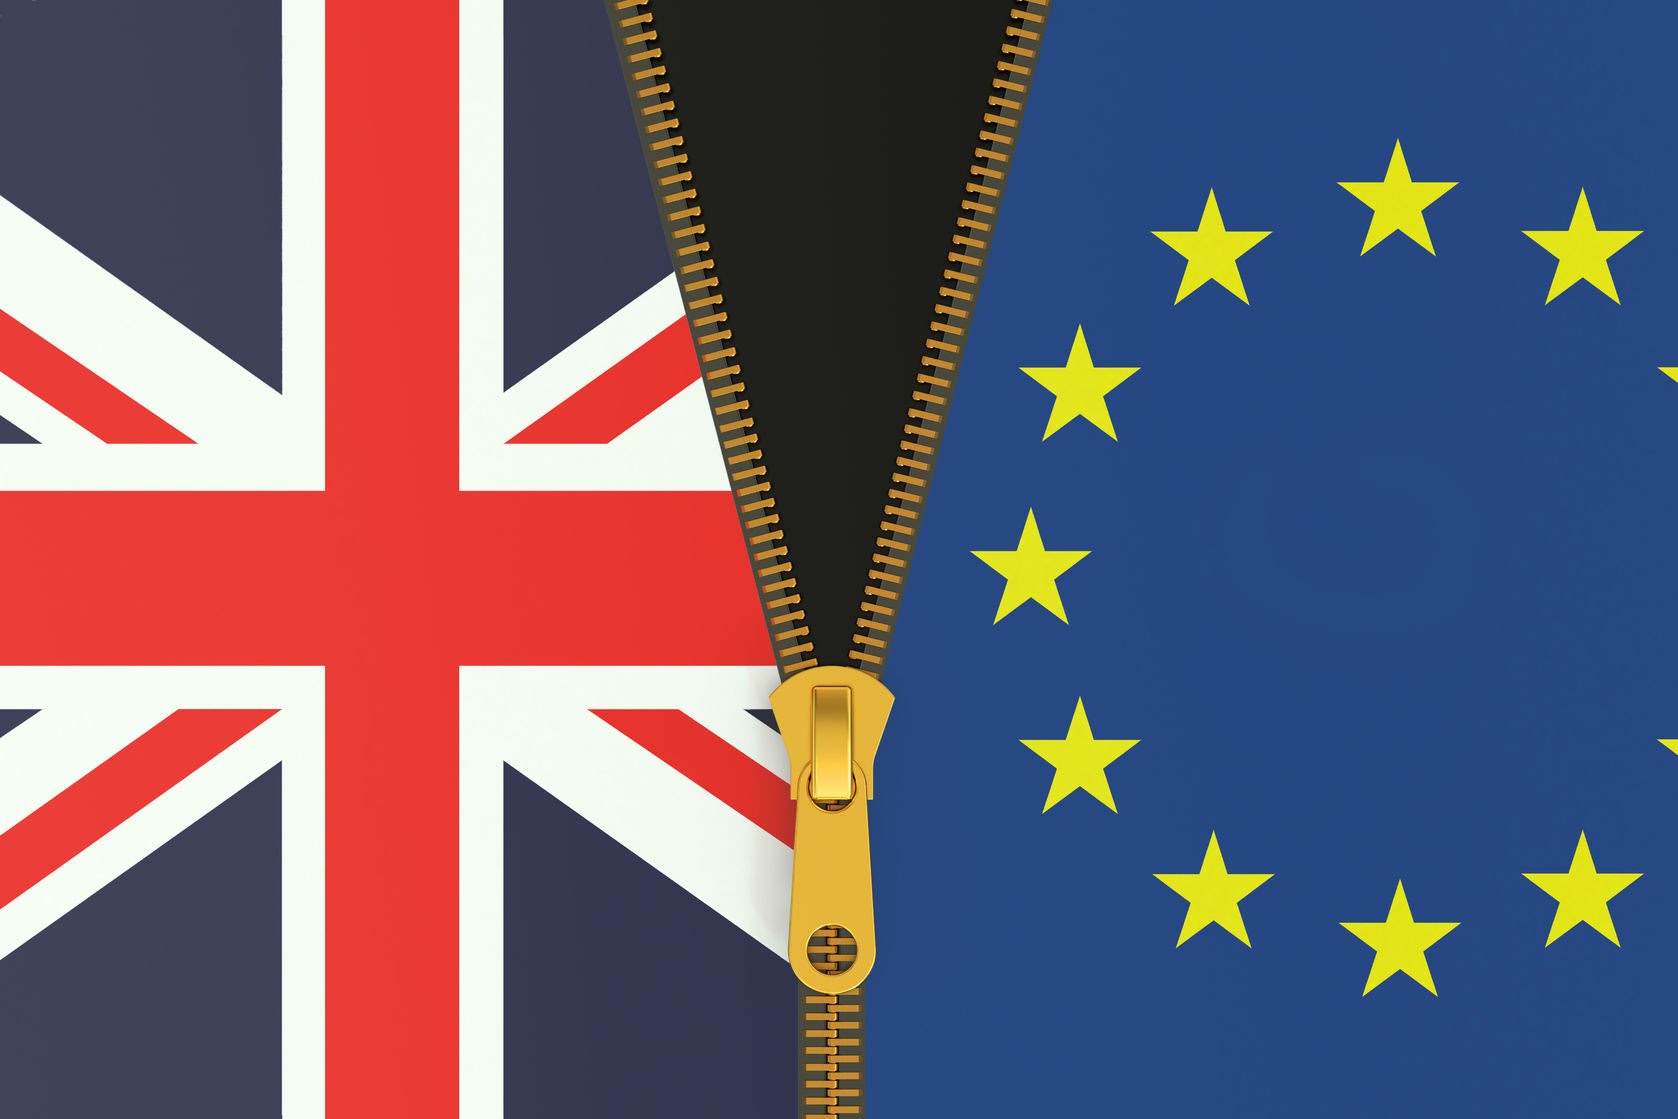  UE presiona al Reino Unido: “Estamos listos para el divorcio”